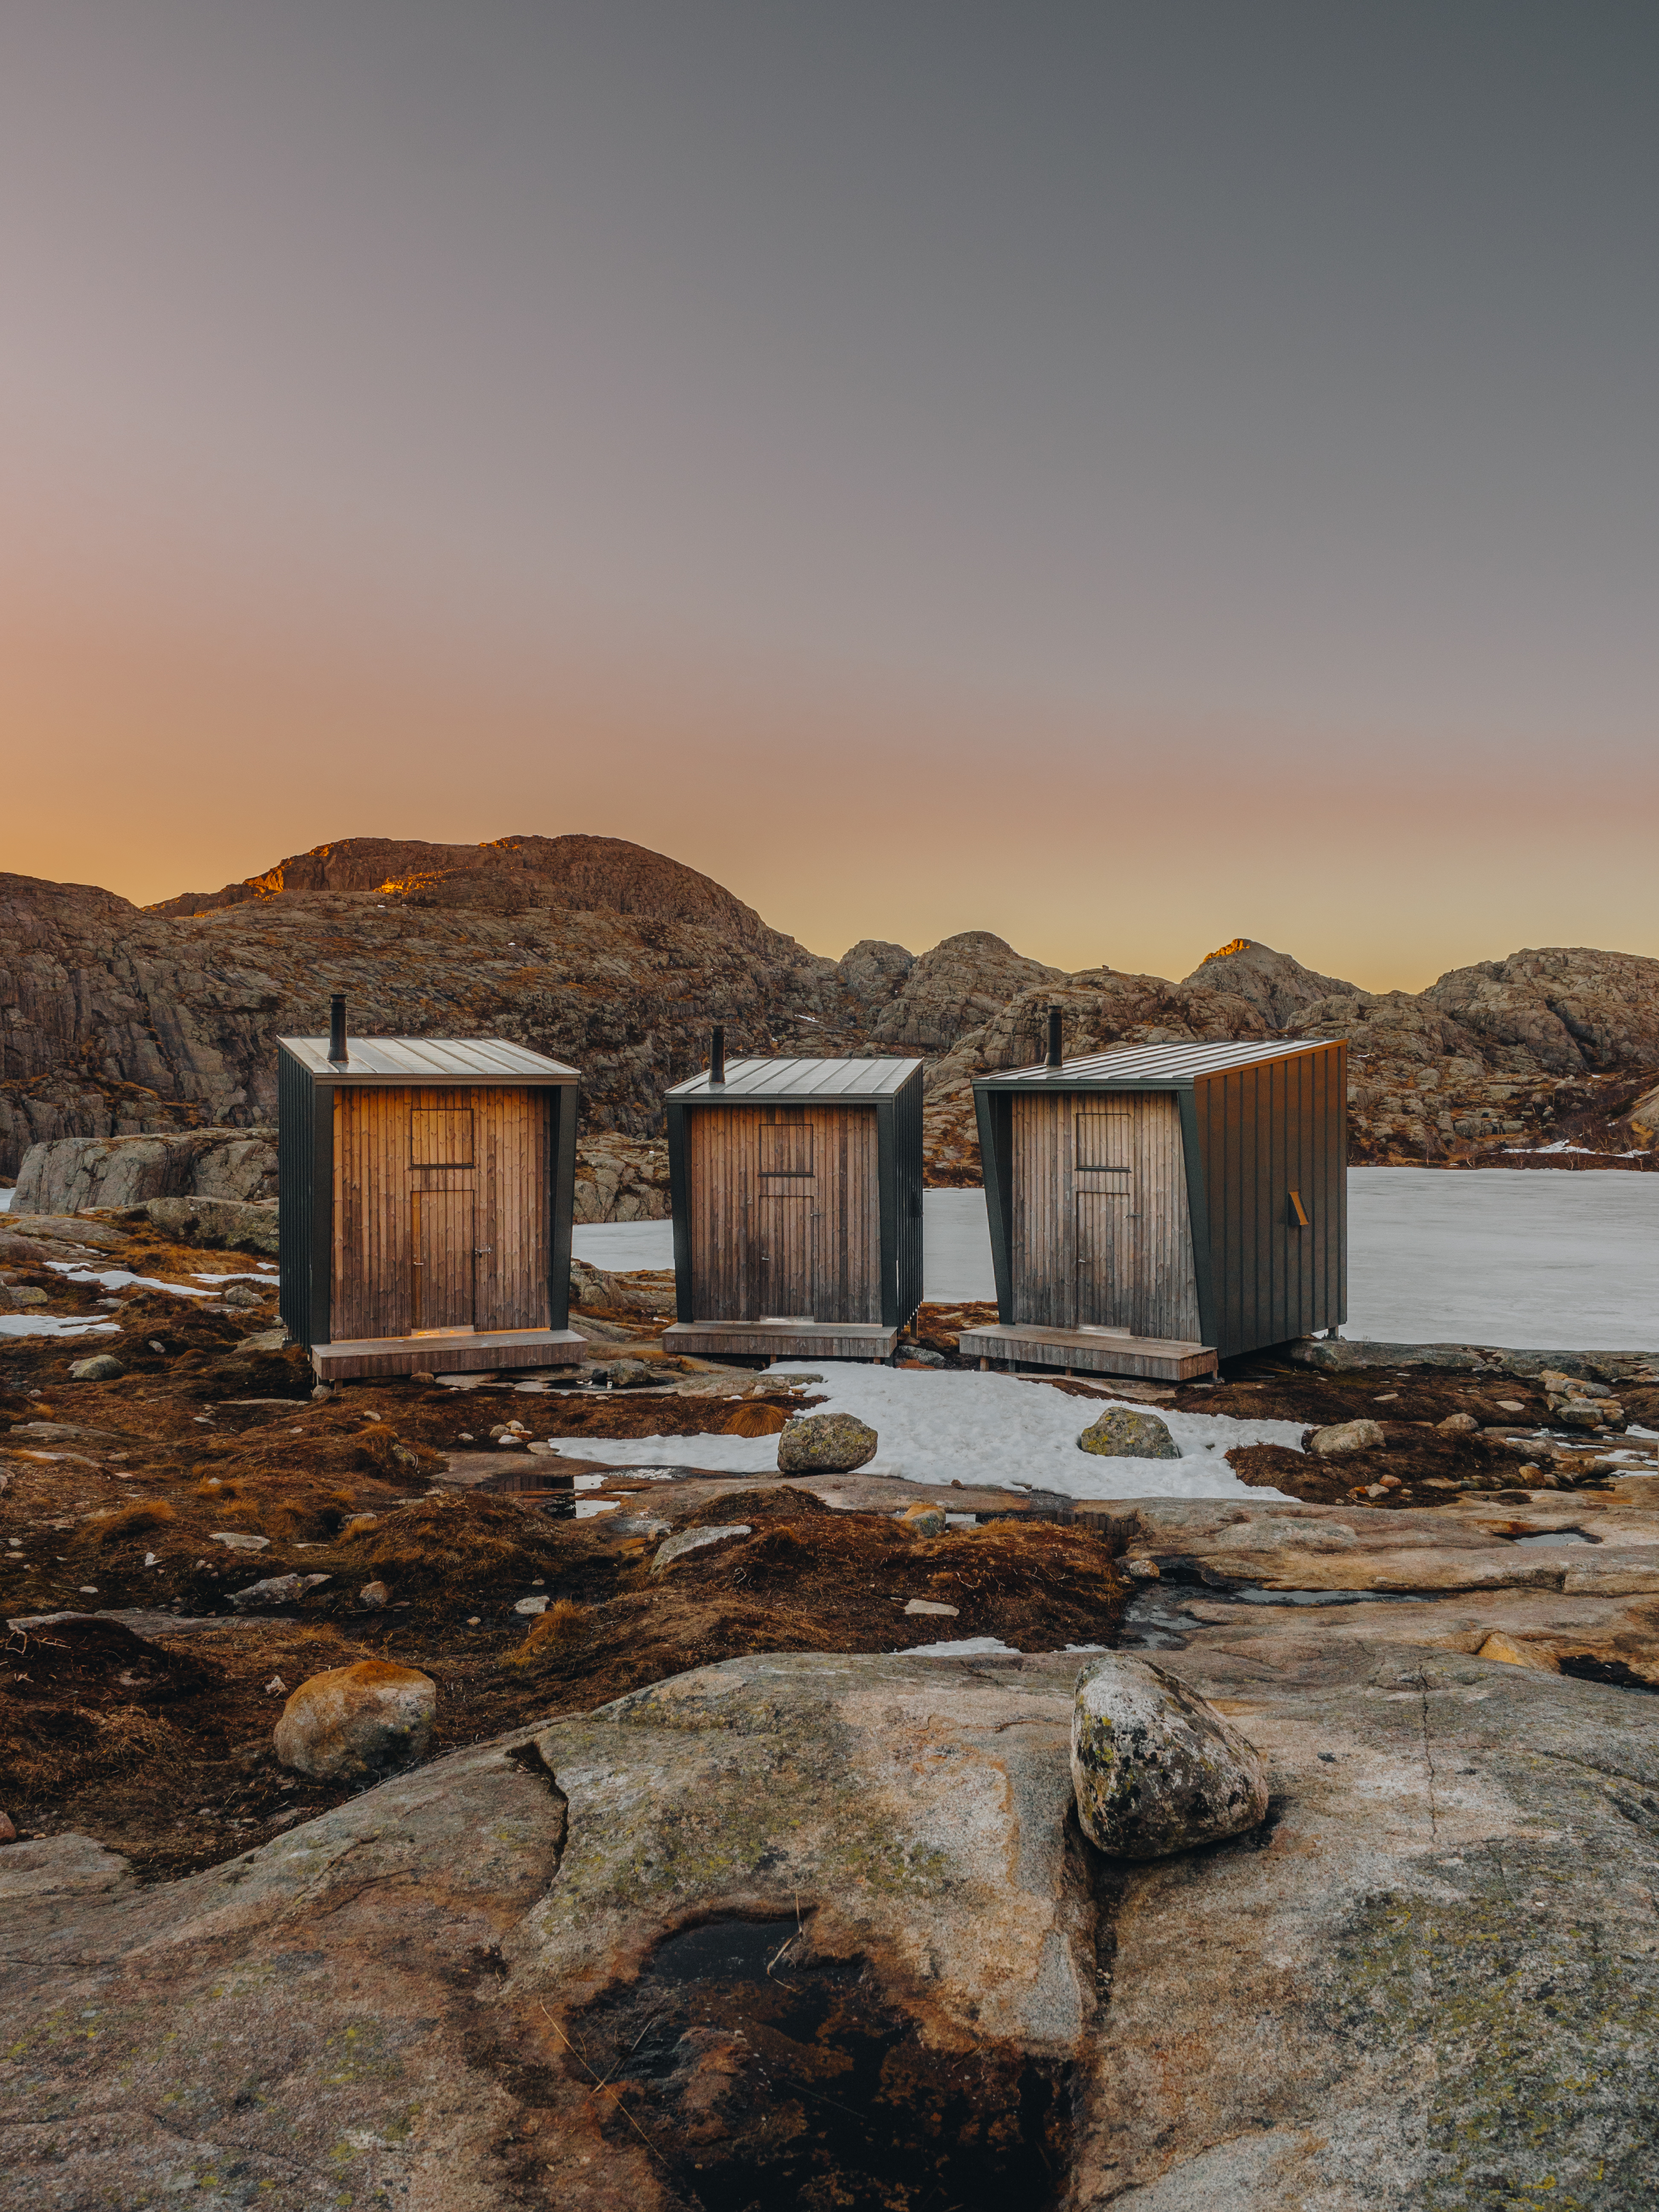 Norge Roadtrip: vandretur til SKÅPET overnatning i en hytte med vinduer - Copenhagen Wilderness